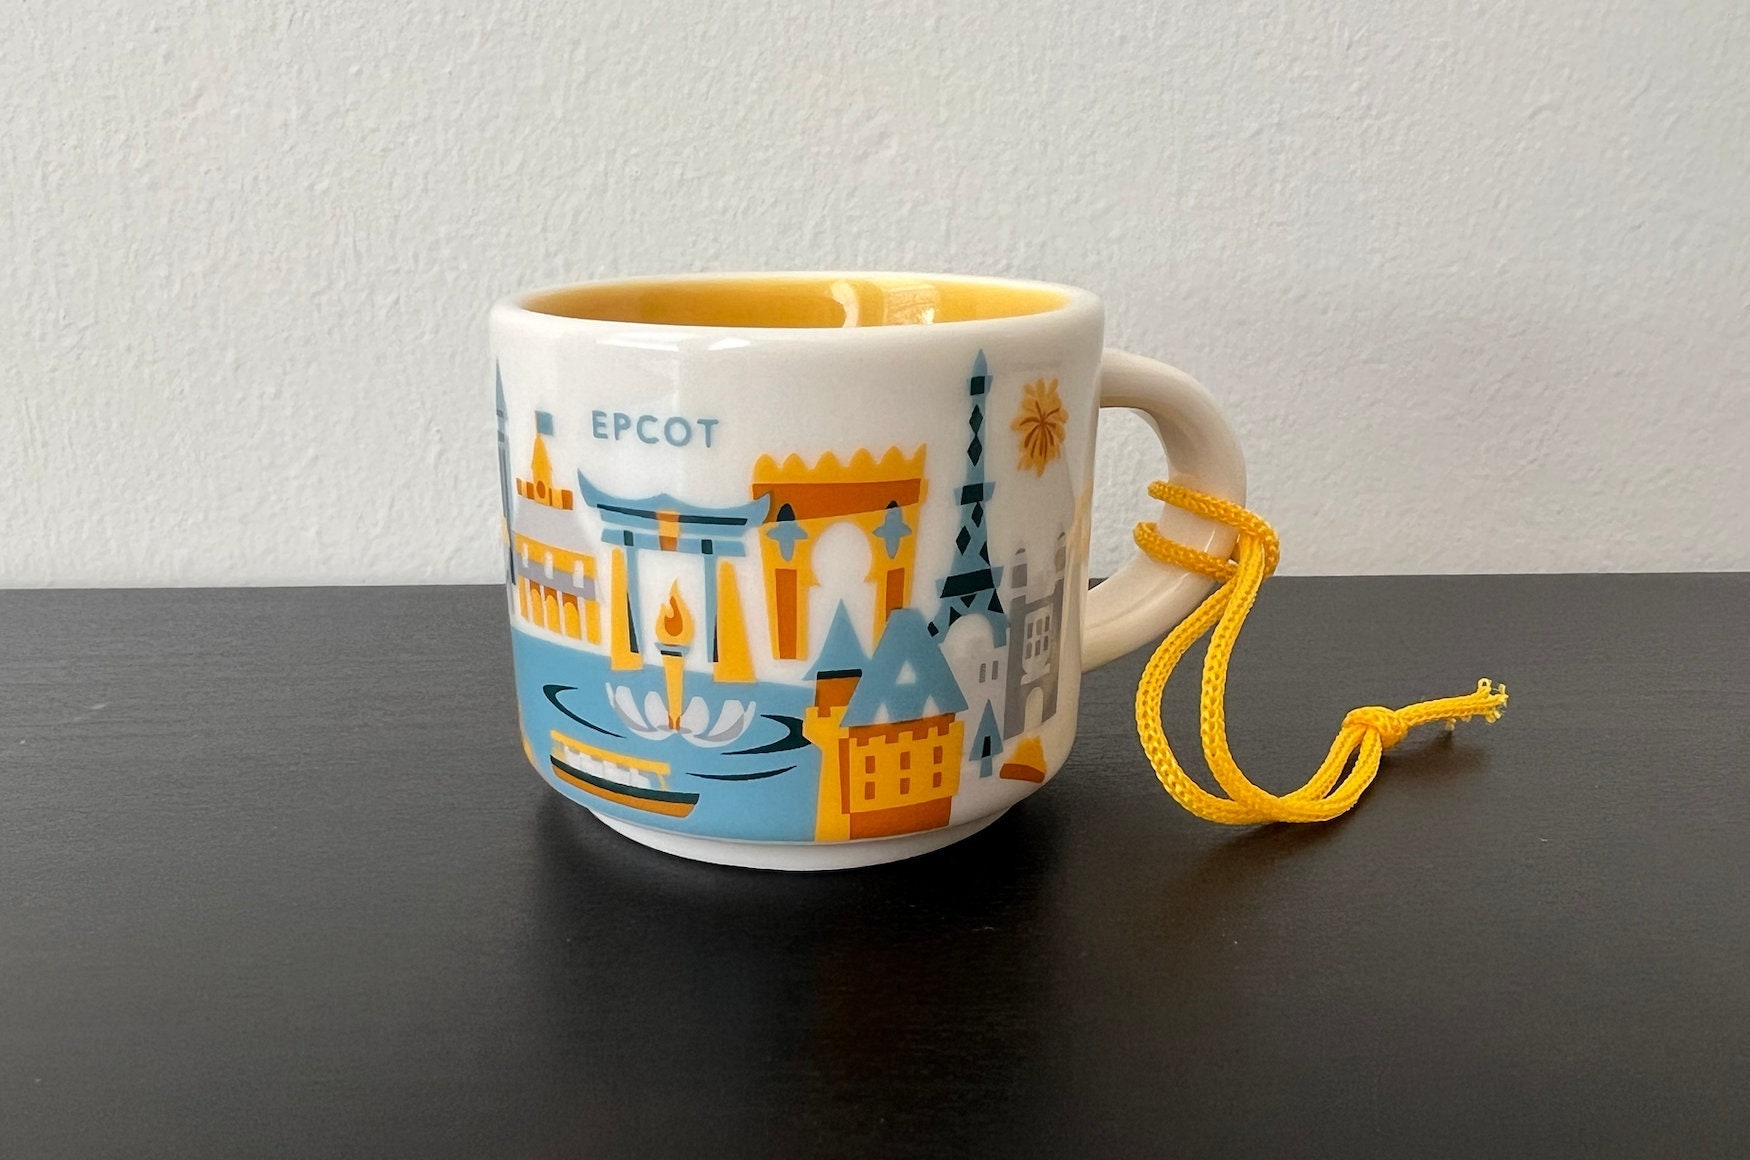 Disney Starbucks Cup Ornament - Retro Epcot